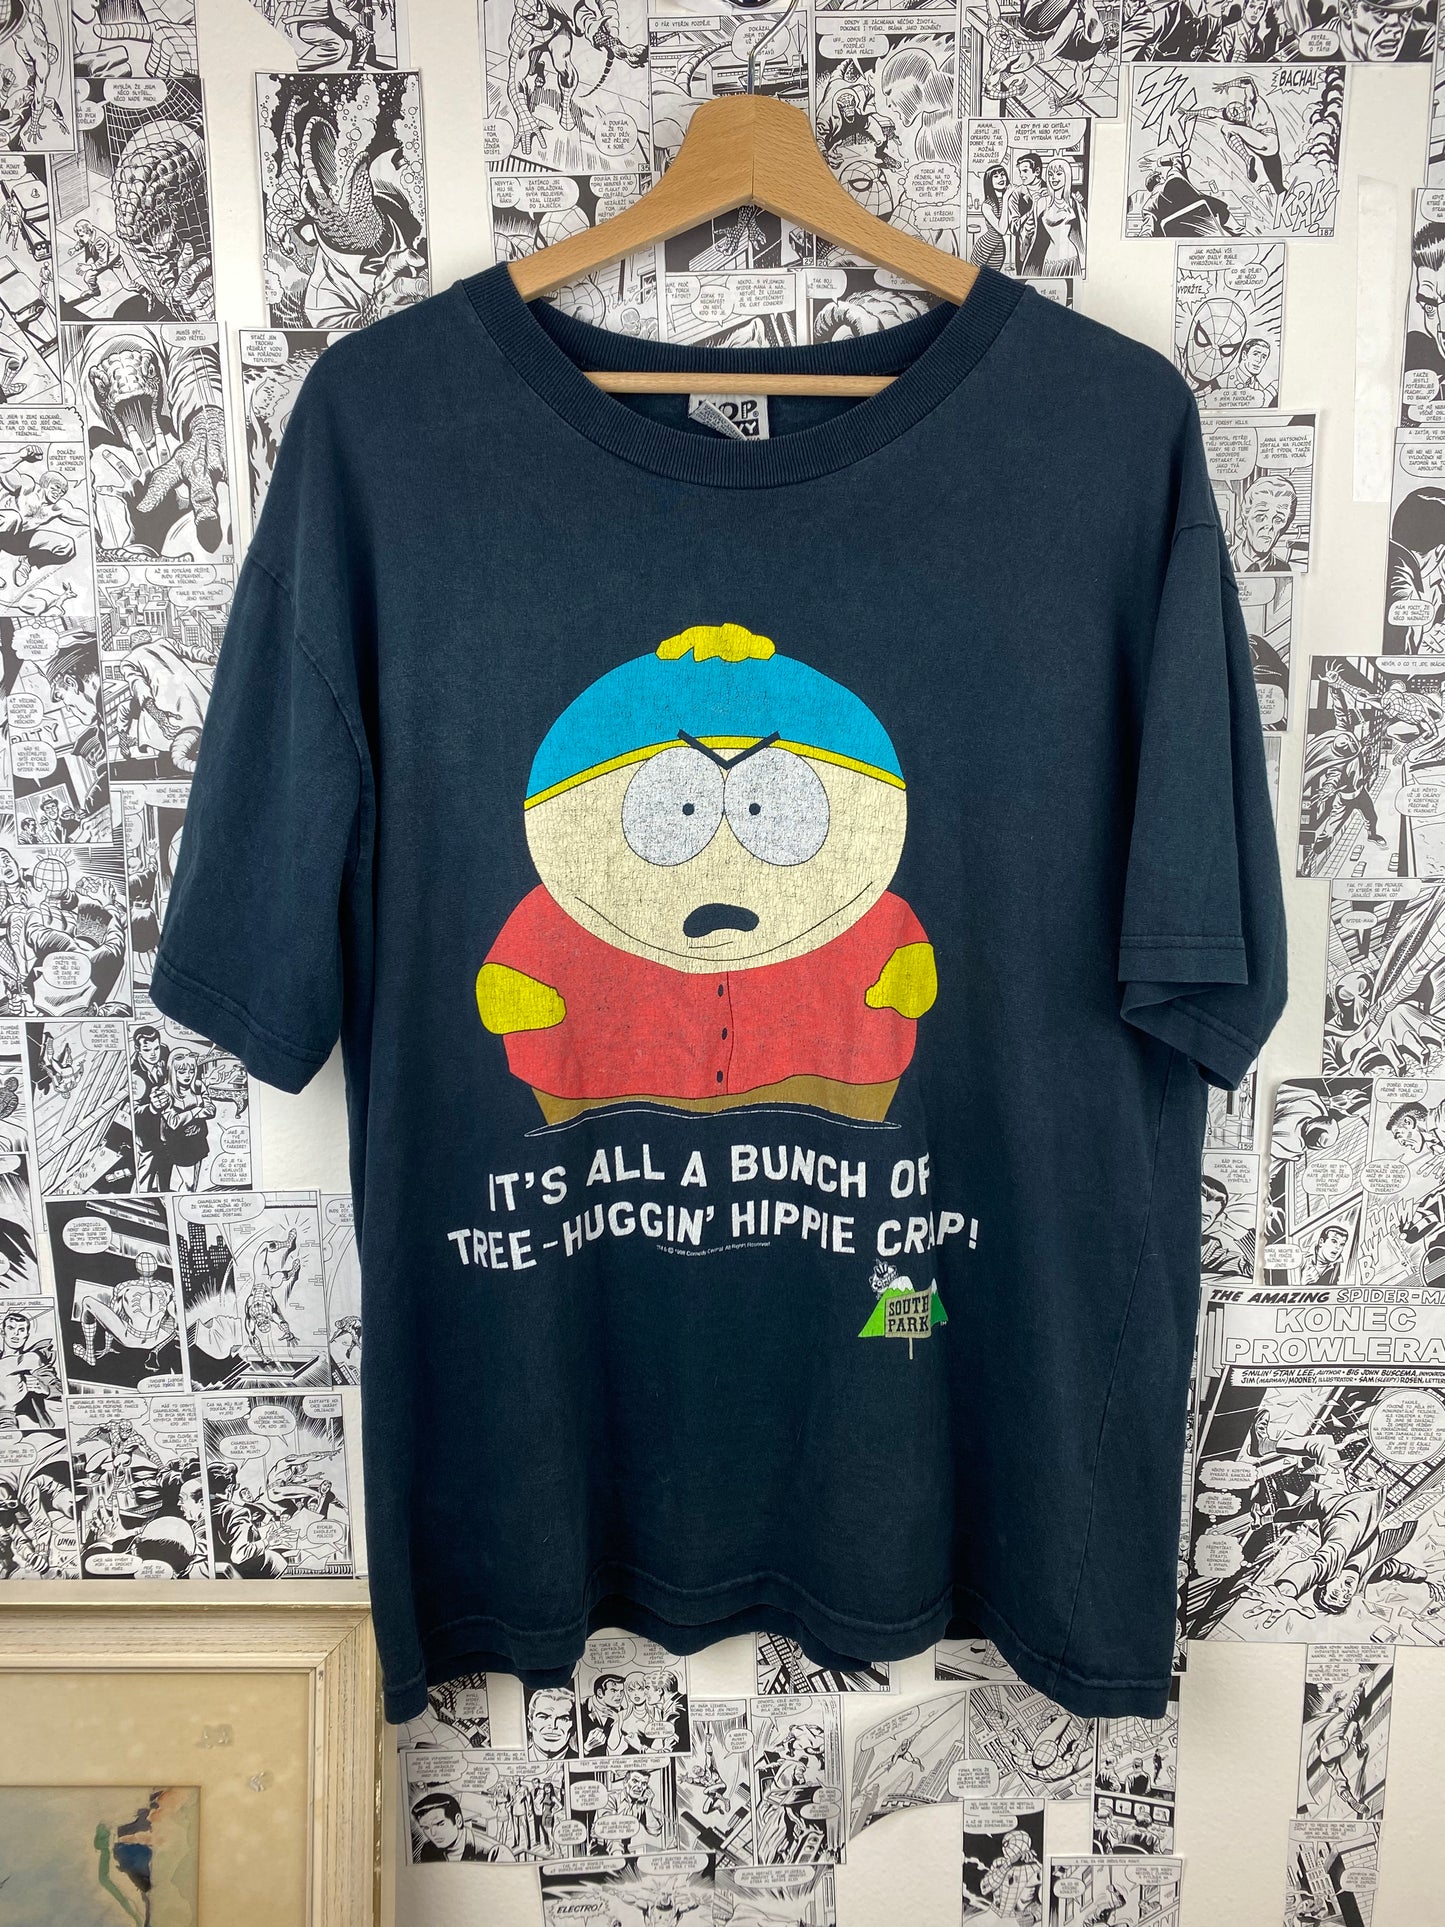 Vintage South Park “Hippie Crap” 1998 t-shirt - size L